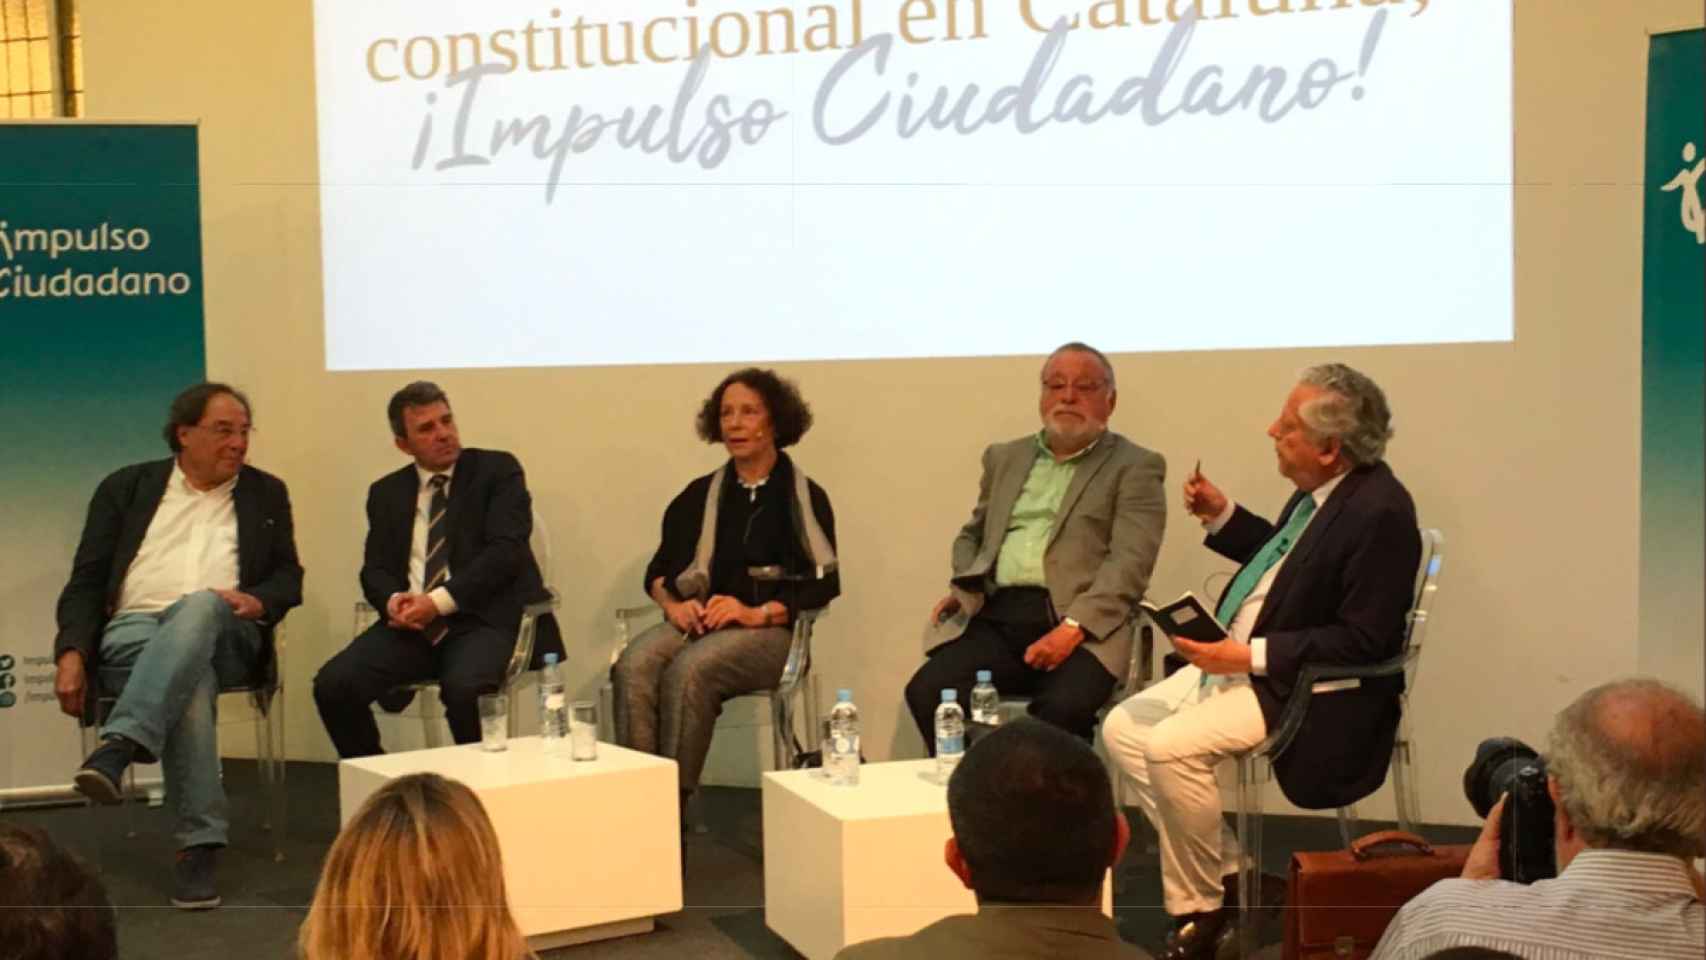 Francesc de Carreras, José Domingo, Ana Palacio y Fernando Savater, ponentes del acto presentado por el periodista Miguel Ángel Aguilar